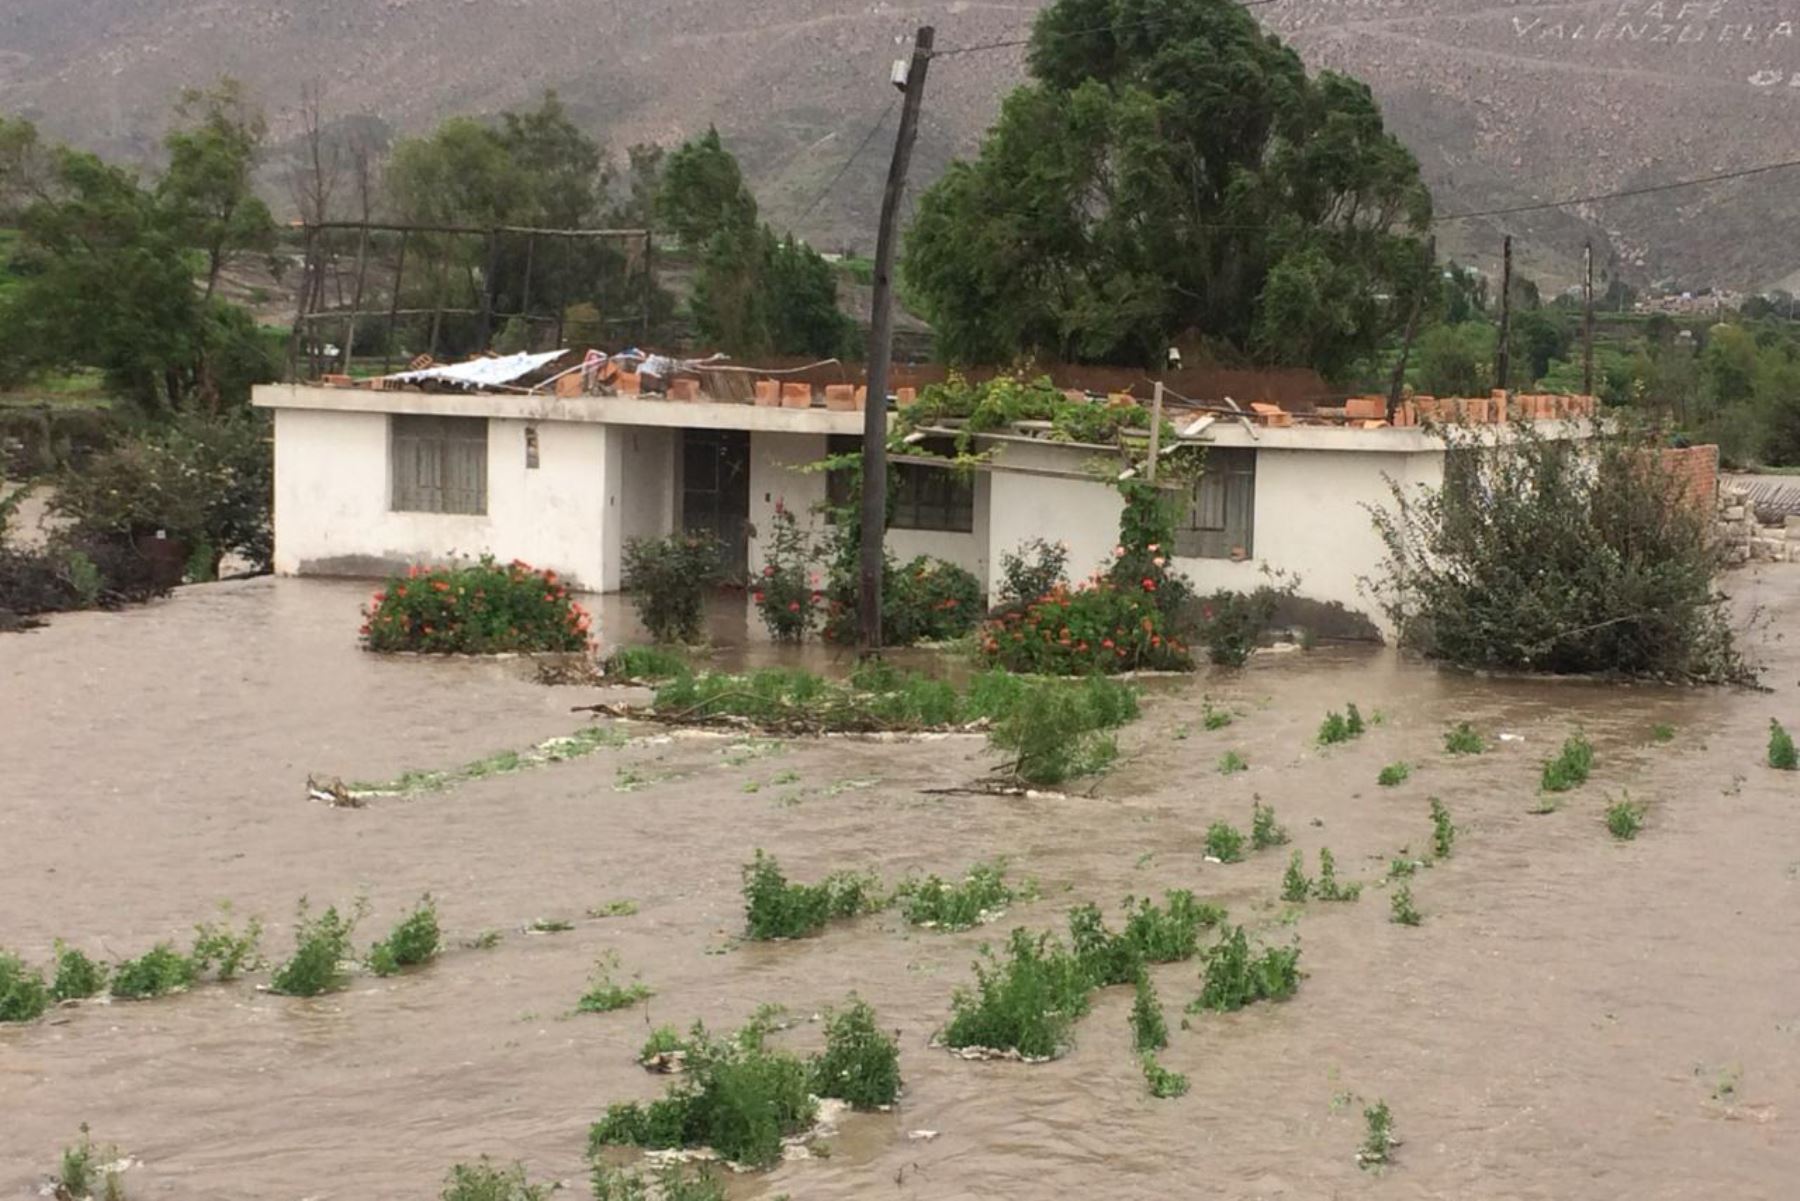 Hasta el momento suman 71 los distritos de la región Arequipa declarados en estado de emergencia por los daños que han ocasionado las intensas precipitaciones pluviales en la infraestructura vial, agrícola, vivienda y saneamiento de dicha jurisdicción. ANDINA/Difusión